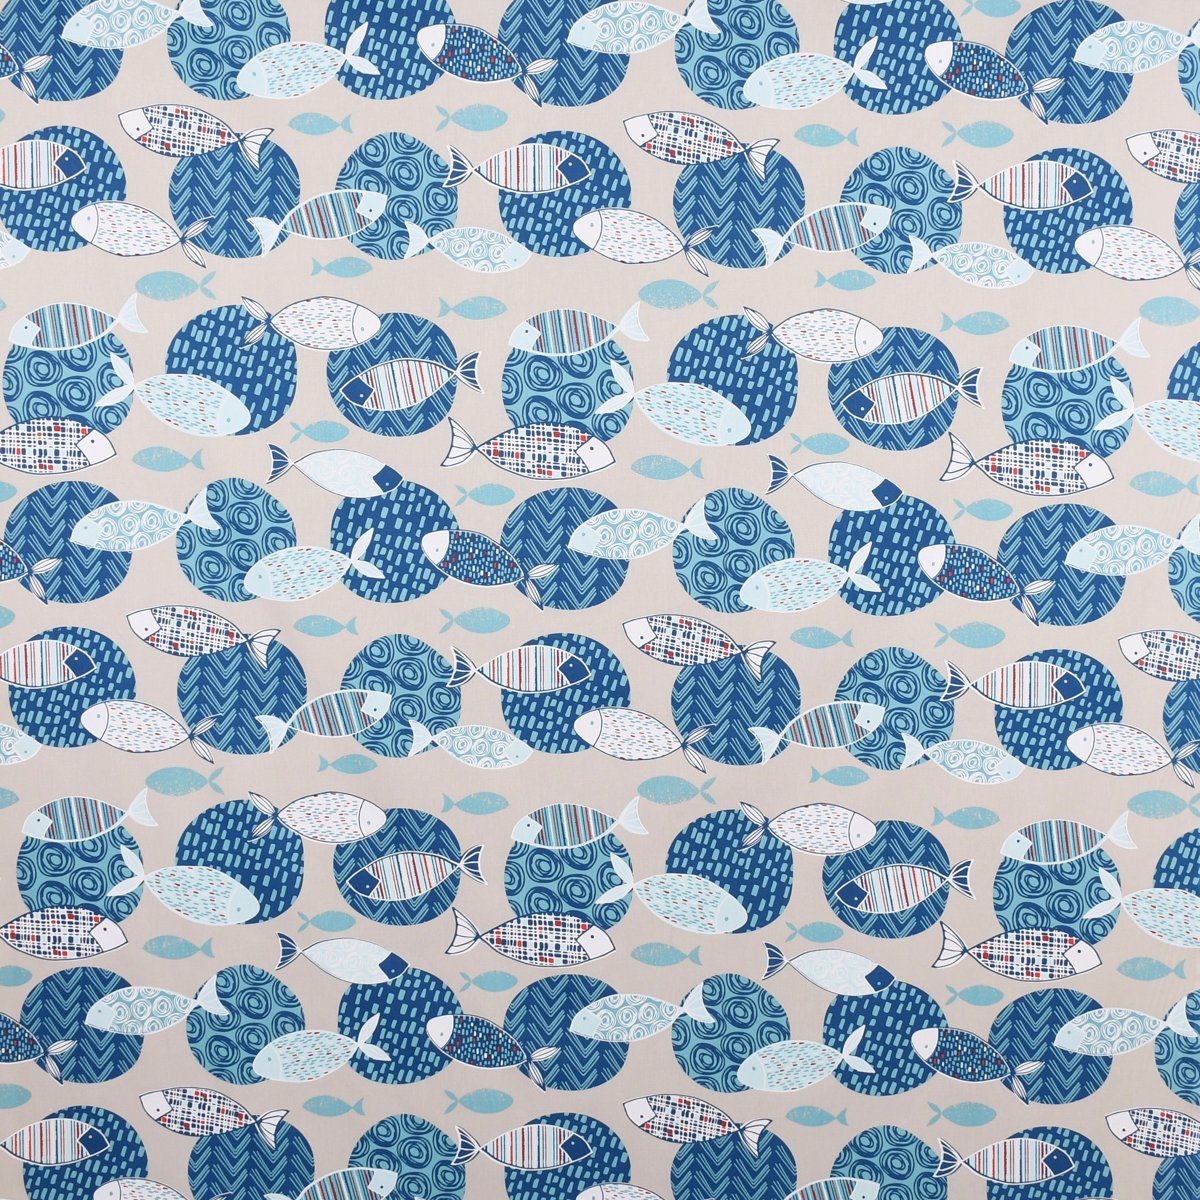 SCHÖNER LEBEN. Tischläufer SCHÖNER LEBEN. Tischläufer Poisson beige 40x160cm, handmade blau Fische Kreise